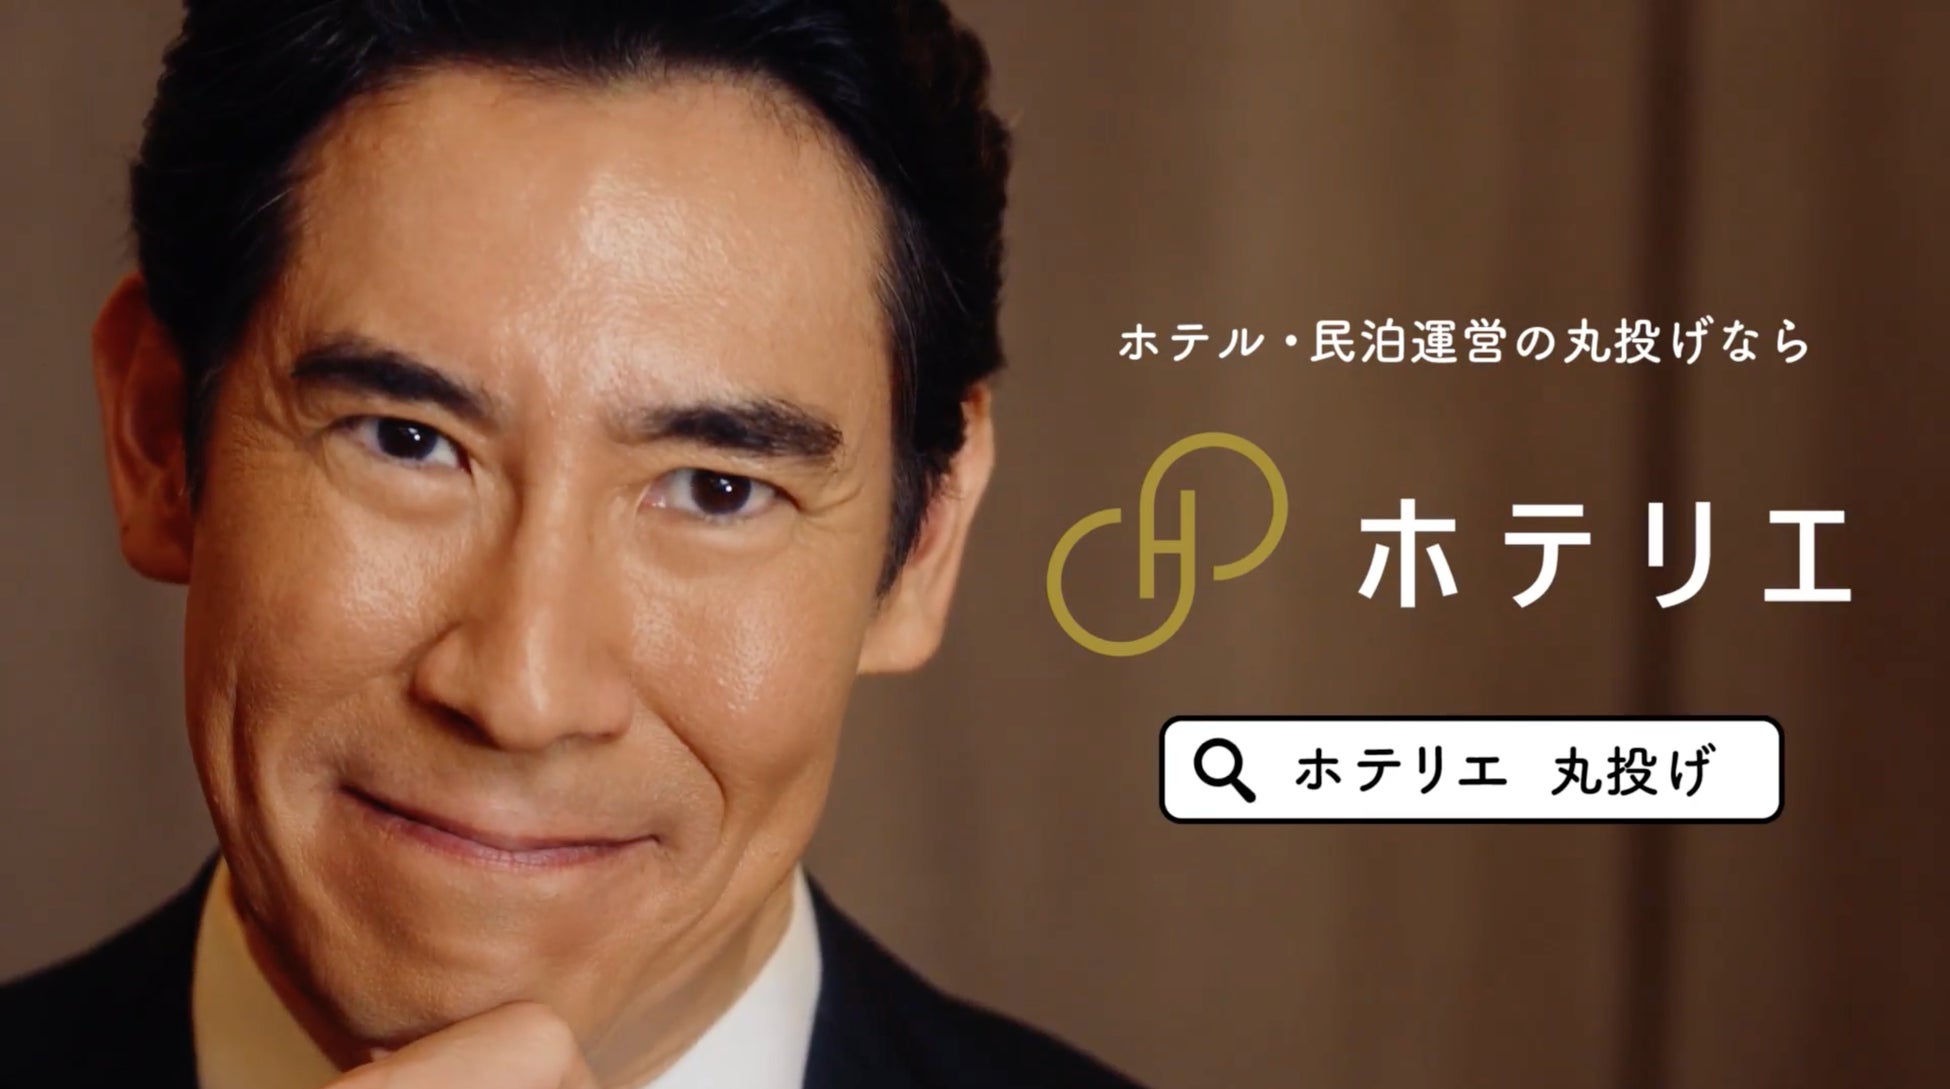 髙嶋政伸さんがホテル・民泊運営代行 ホテリエのイメージキャラクターに就任のサブ画像1